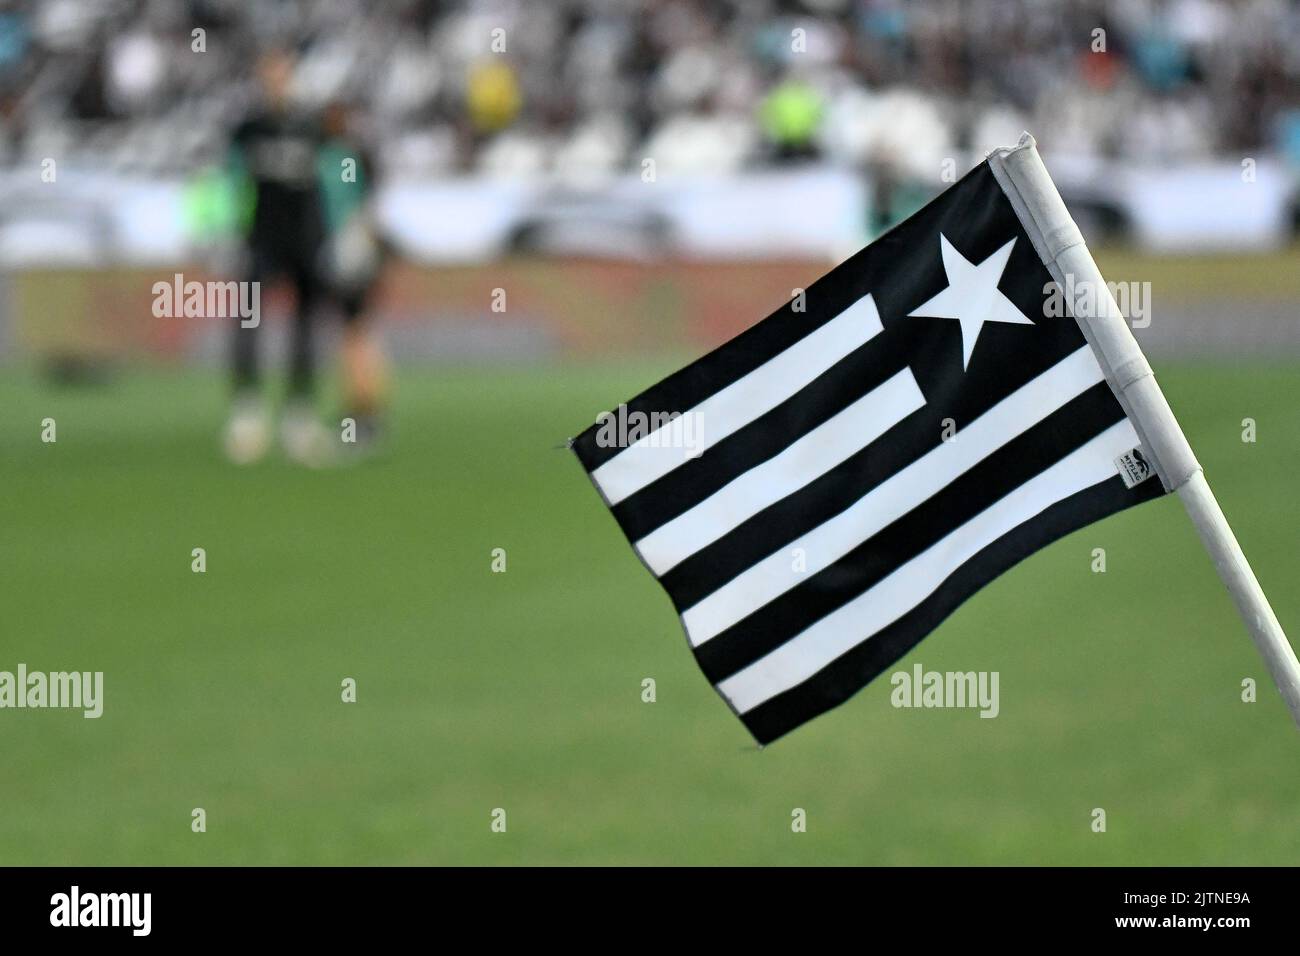 Detalhe da bandeira de escanteio, vista no Estádio Nilton Santos ( Engenhão ) momentos antes da partida entre Botafogo e Flamengo, pela 24ª rodada do Campeonato Brasileiro Série A 2022, neste domingo 28. Stock Photo